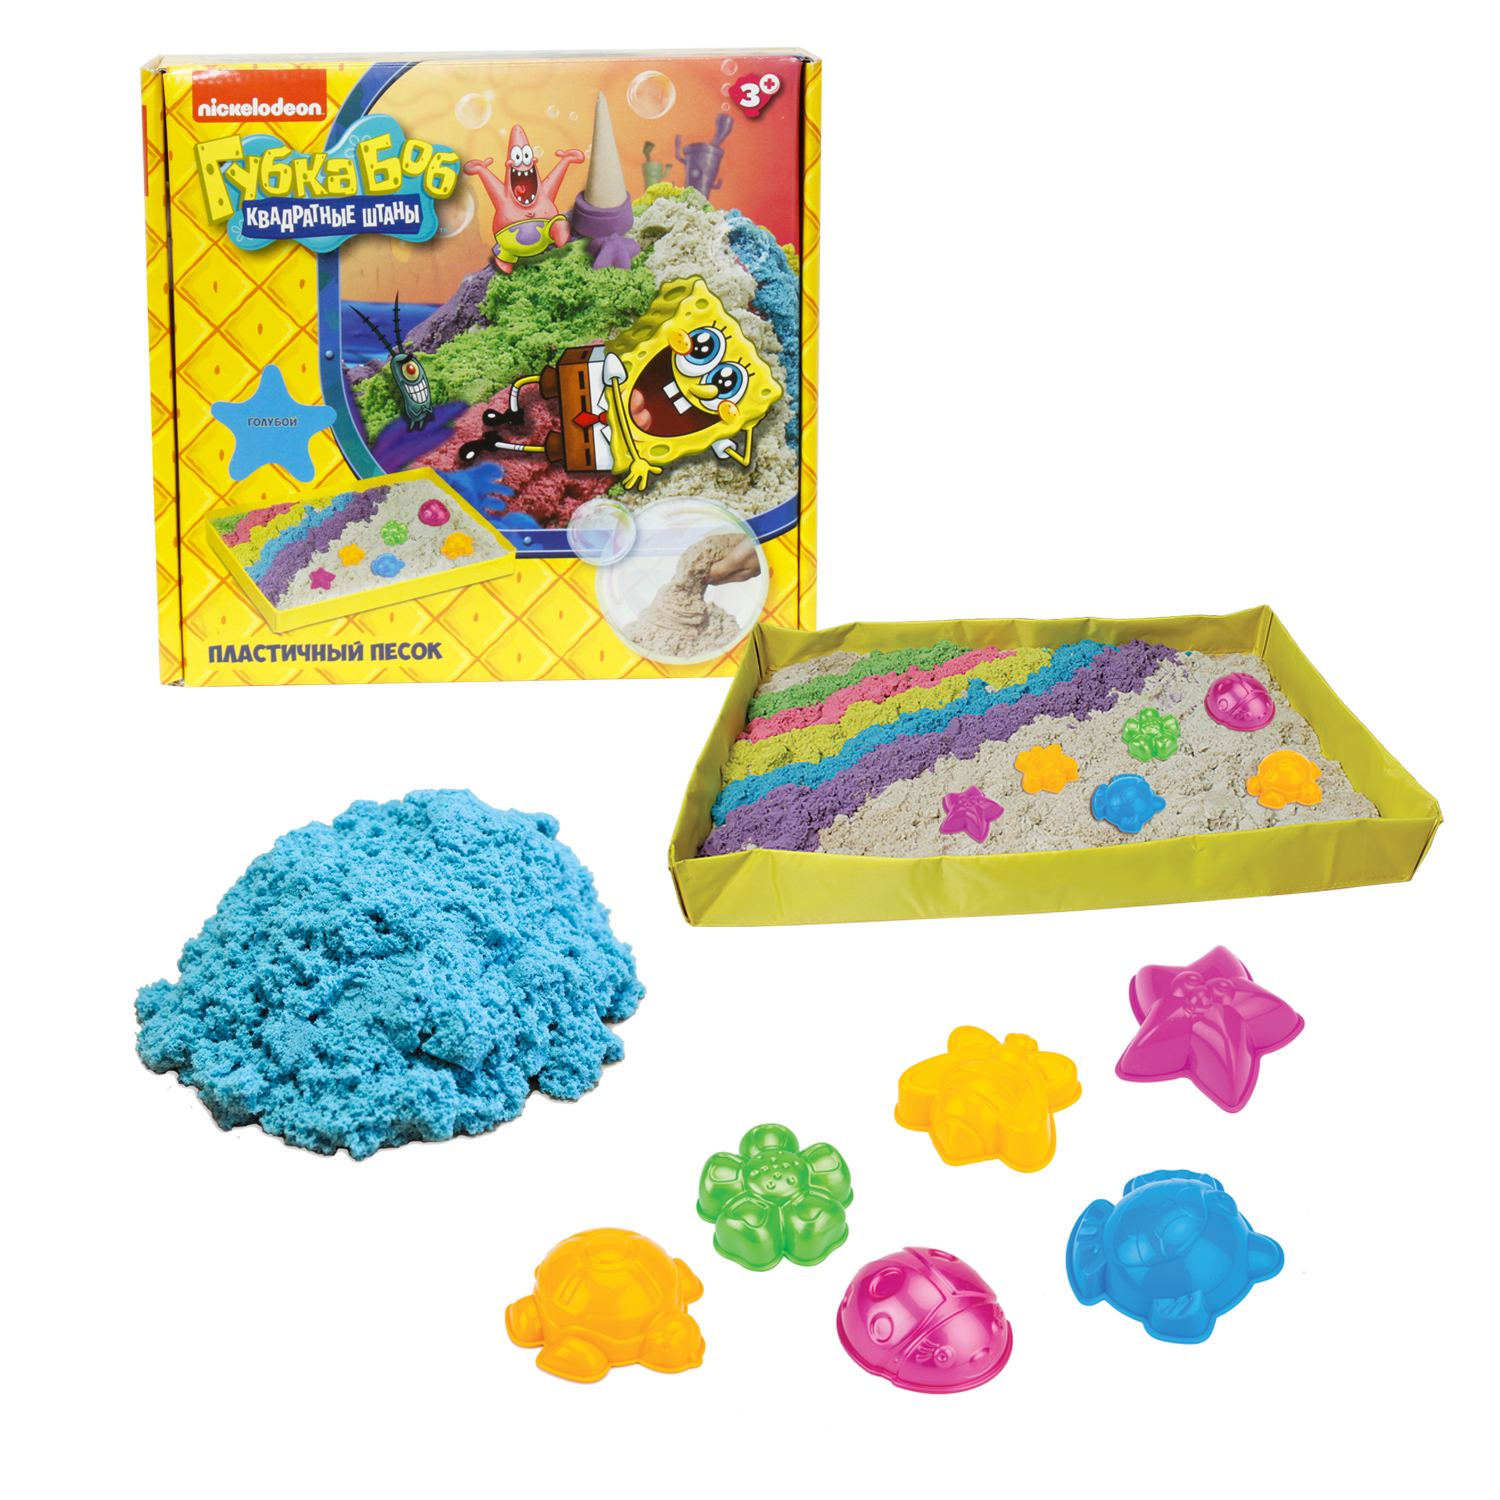 Набор 1 Toy "Губка Боб" голубой, песочница и формочки, 1 кг